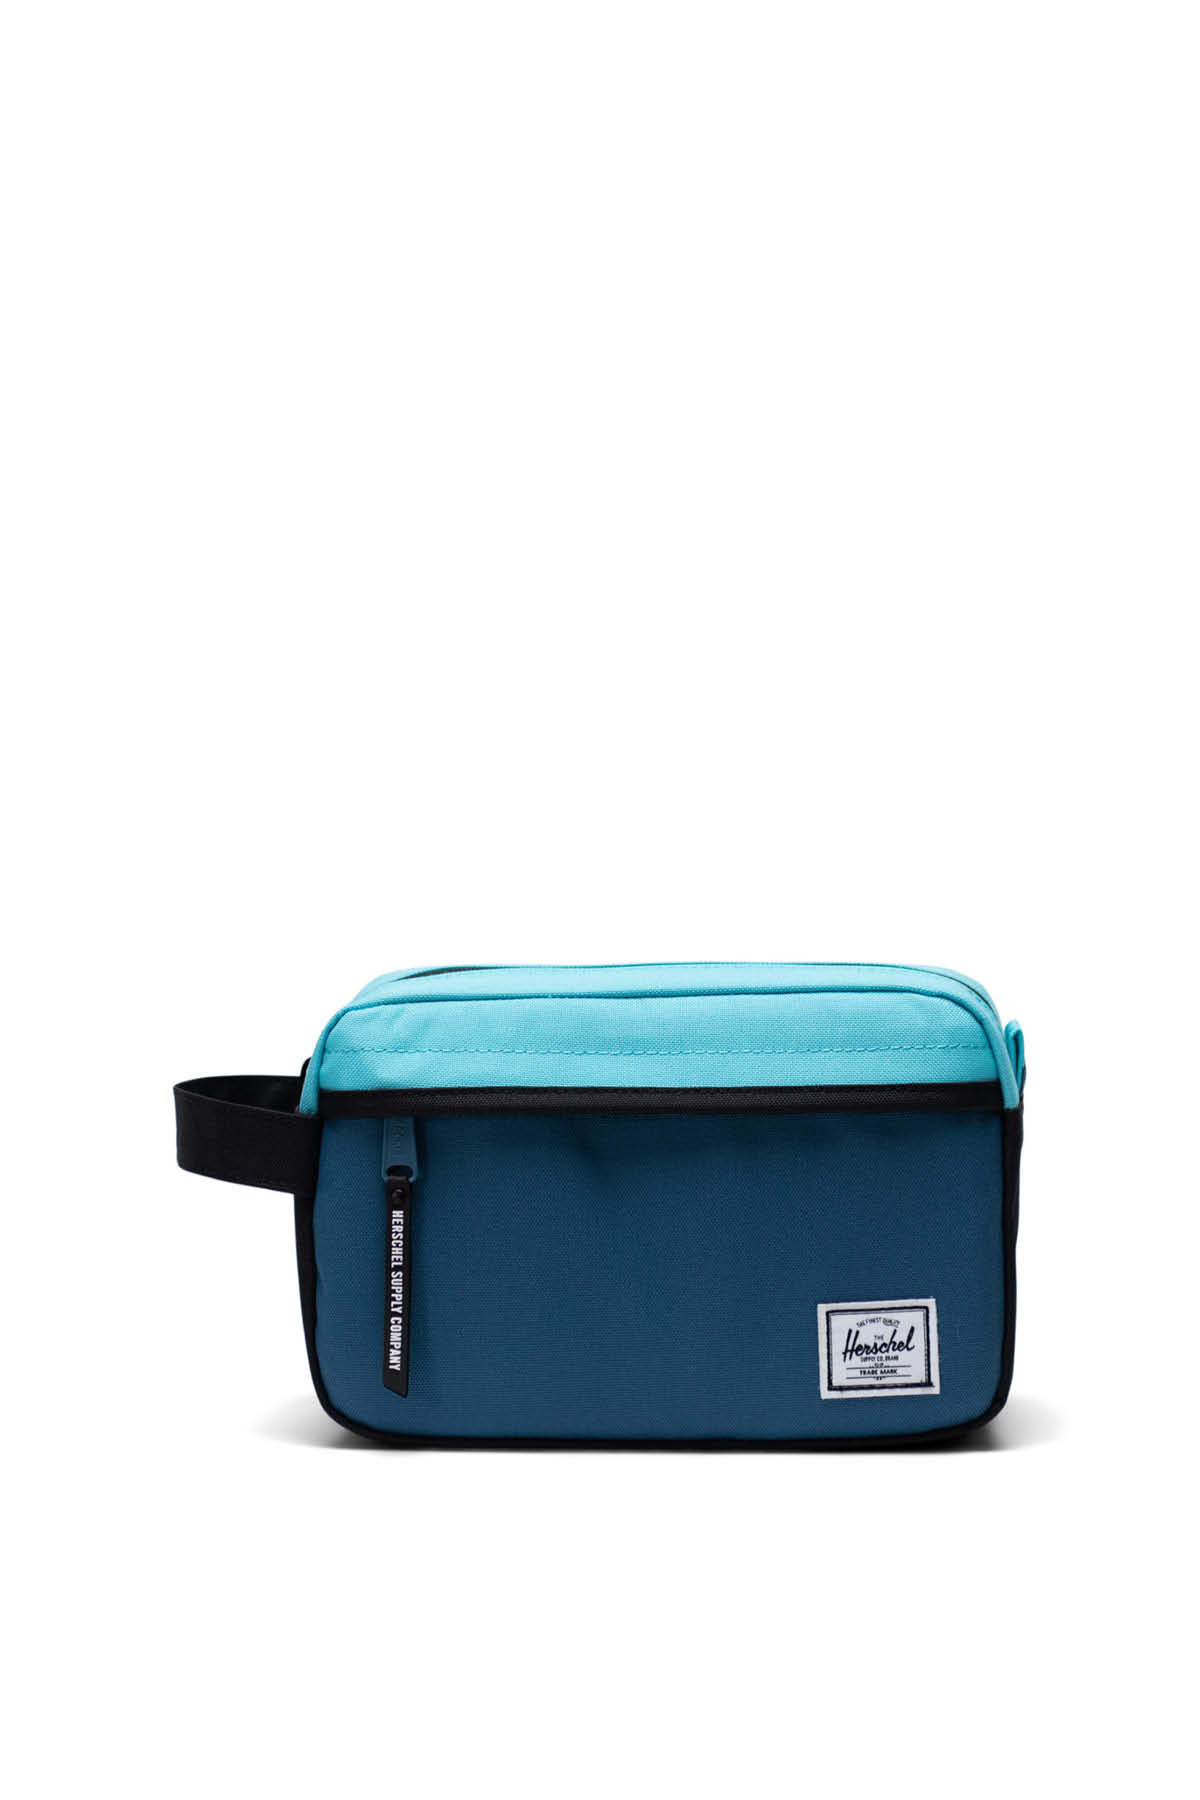 Herschel Heritage™ Shoulder Bag Steel Blue | Chicory Coffee | Herschel ...